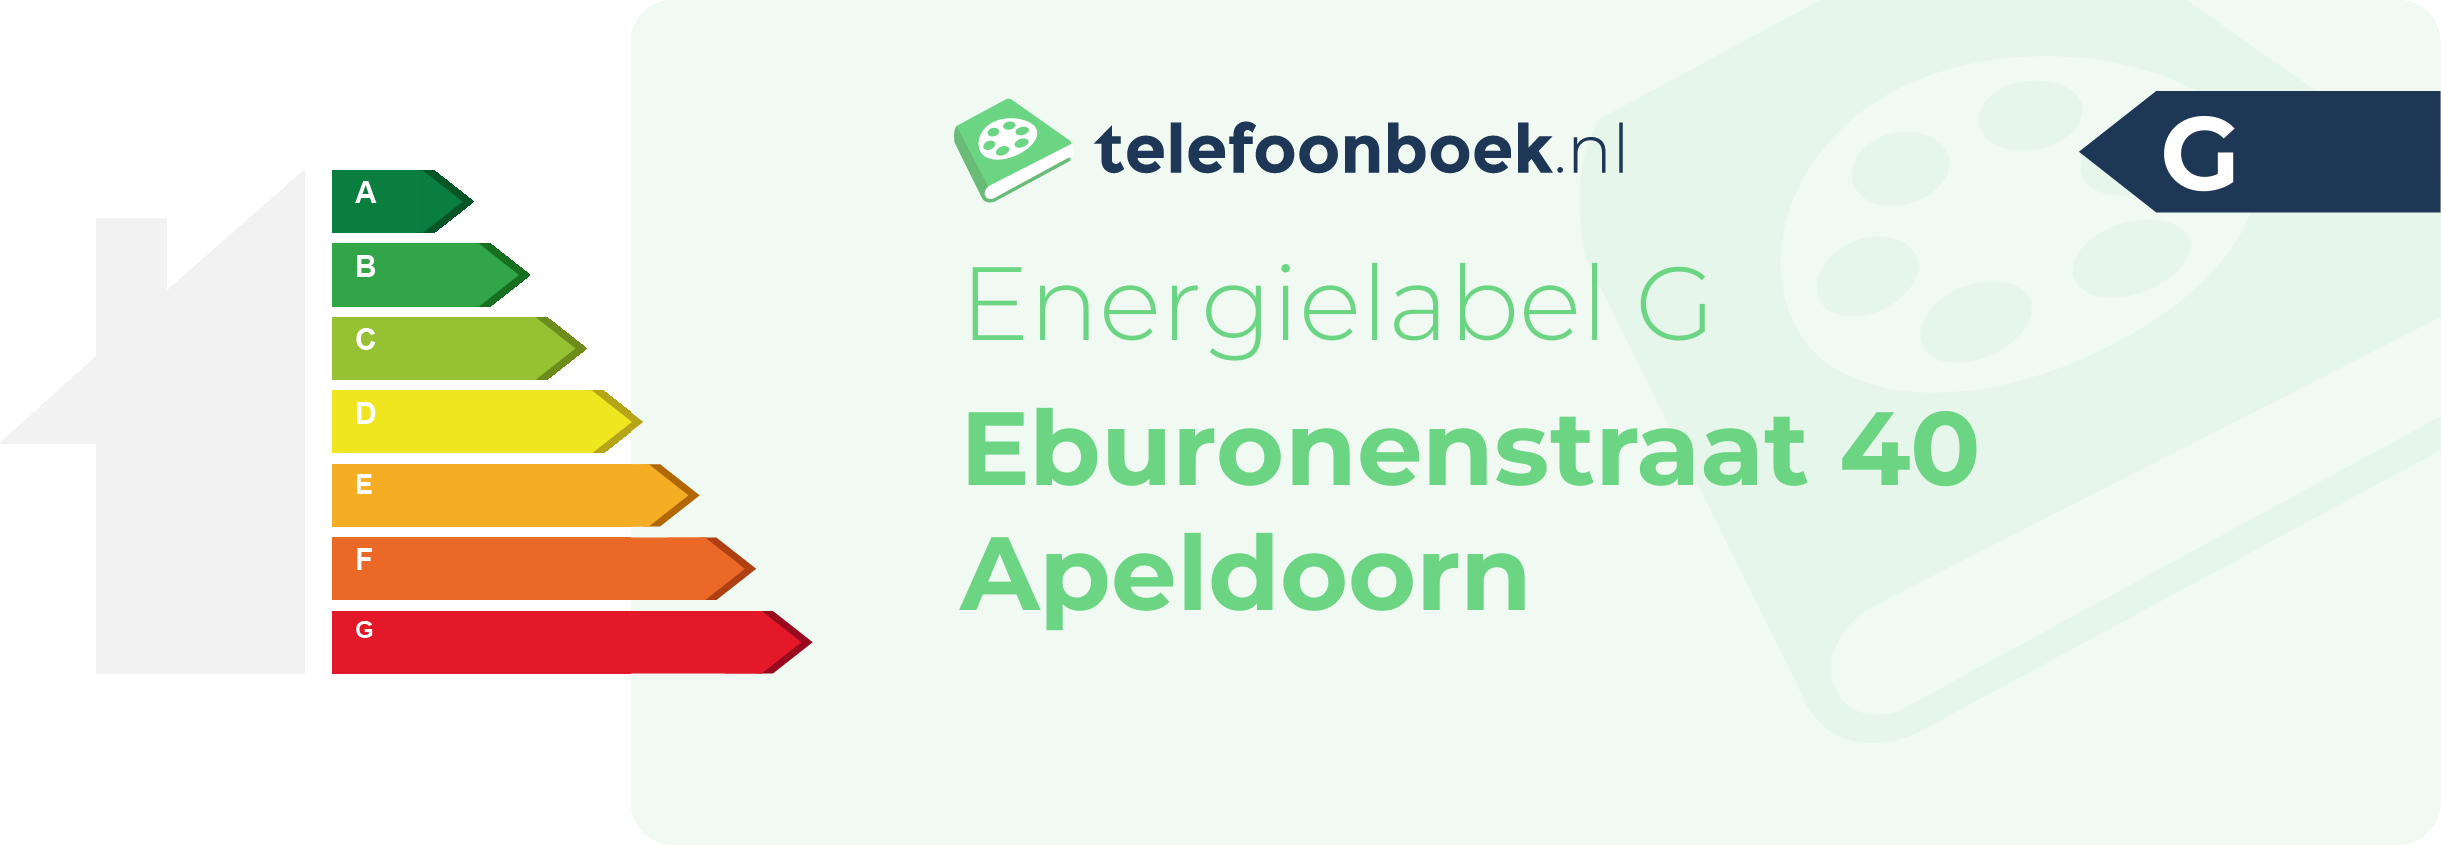 Energielabel Eburonenstraat 40 Apeldoorn